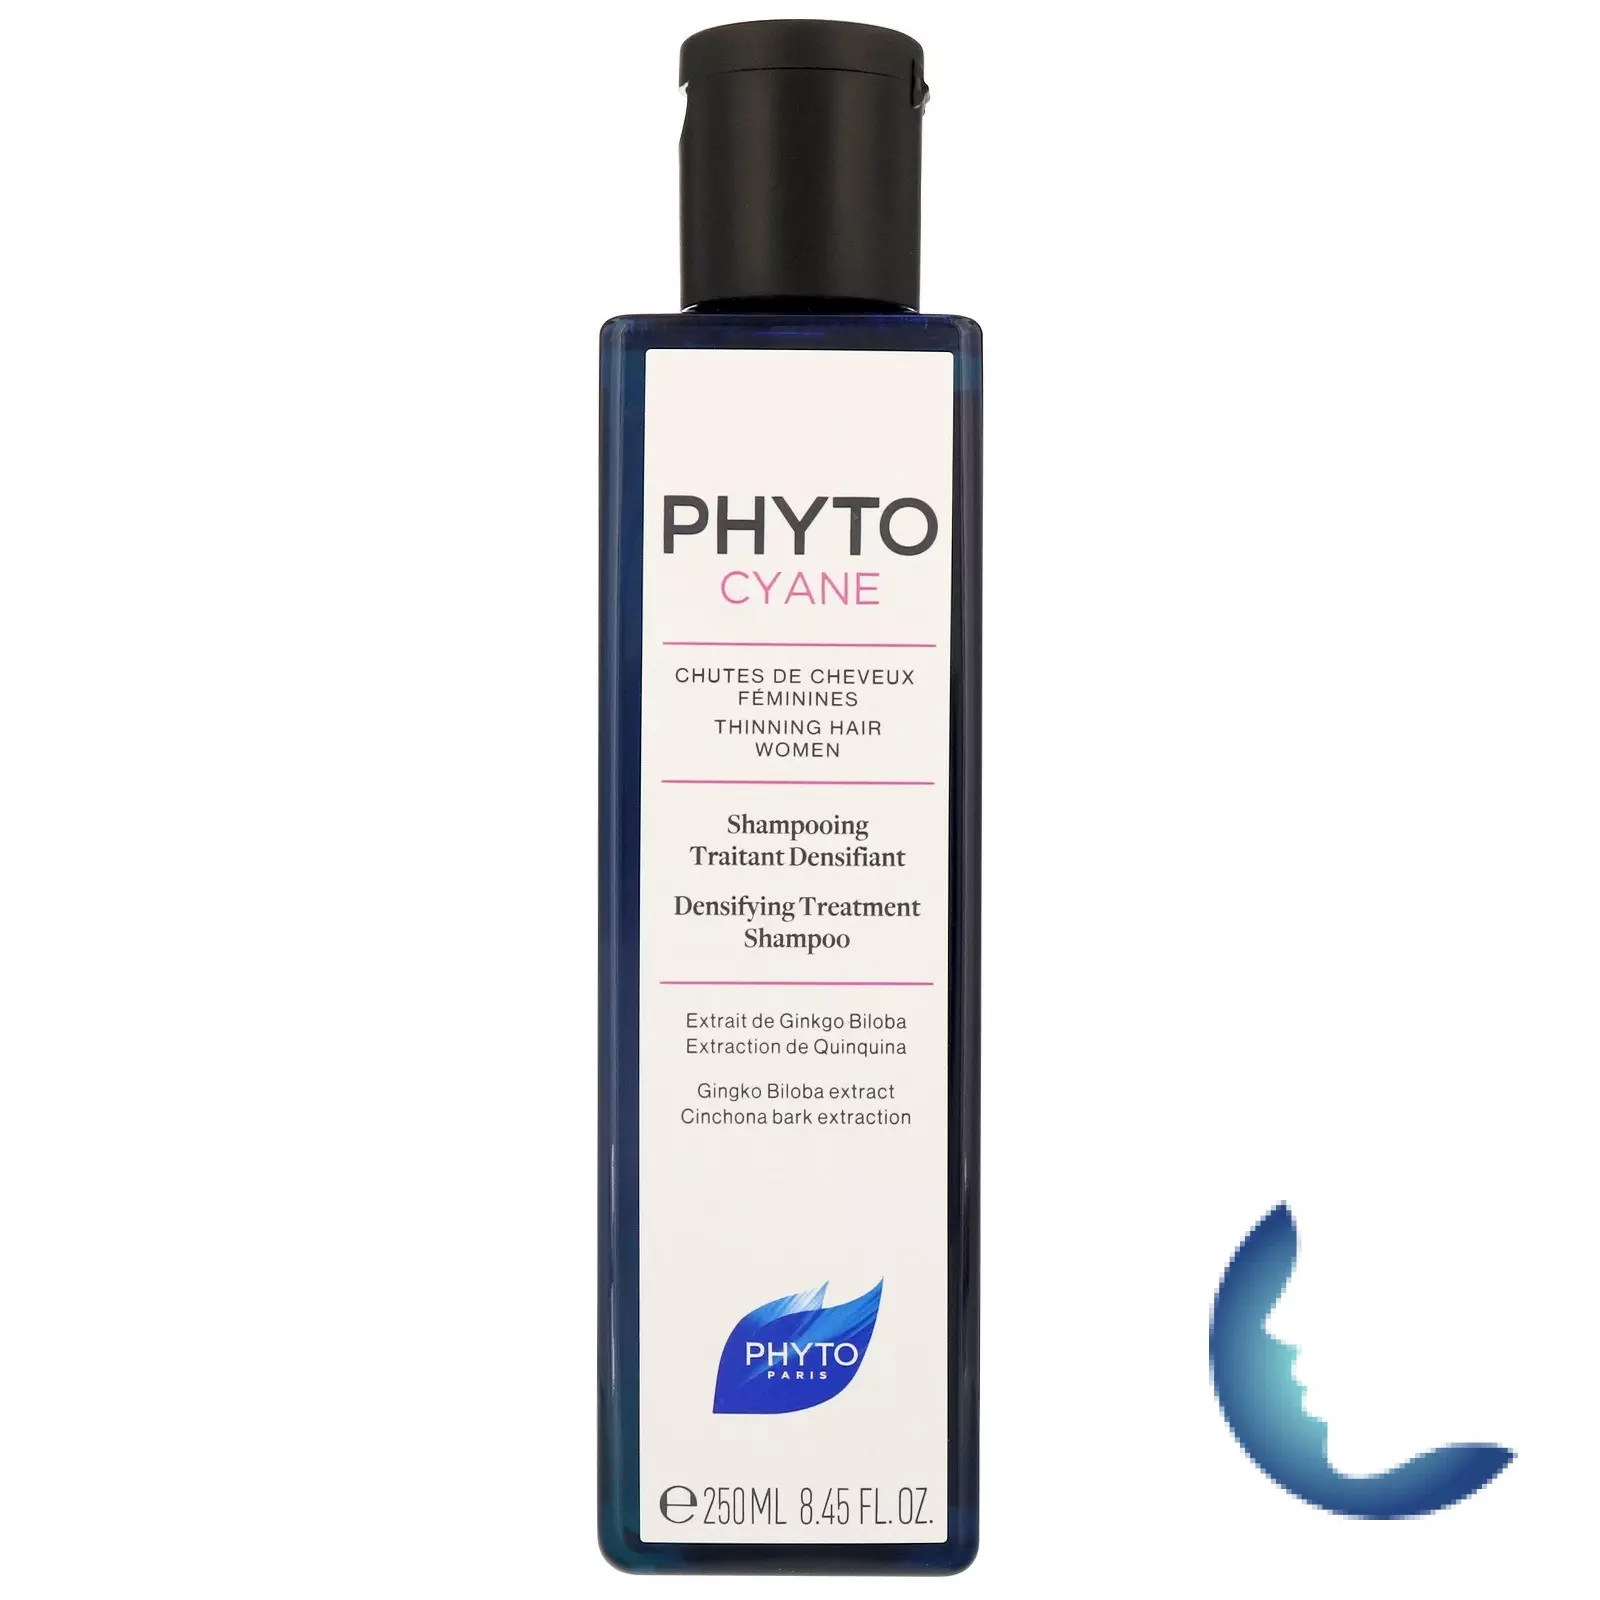 PHYTO Phytocyane Shampooing Traitant Densifiant, 200ml